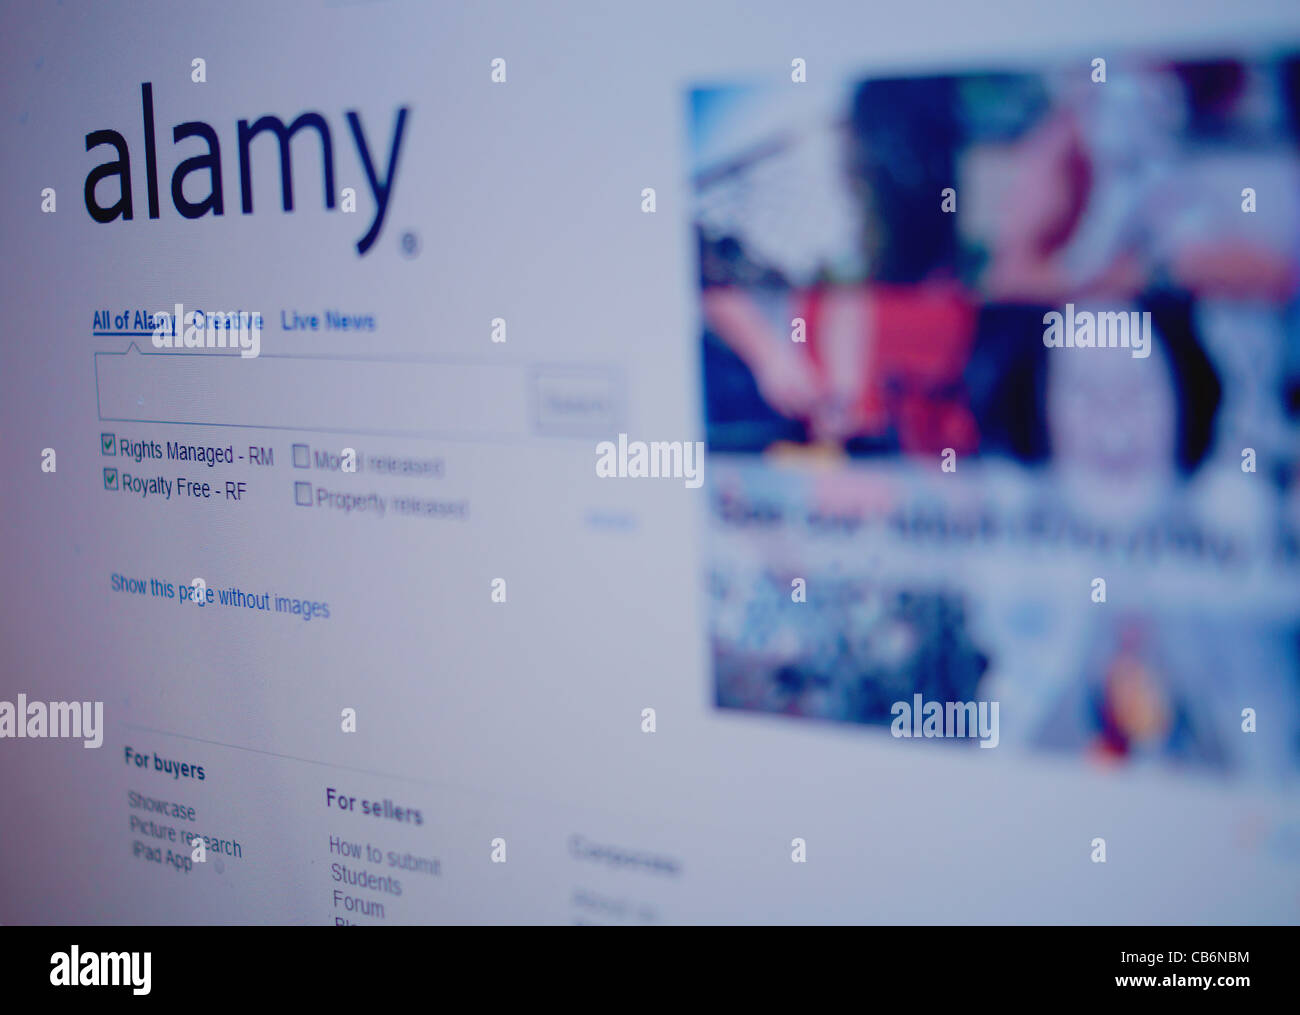 Alamy sitio web front page Foto de stock